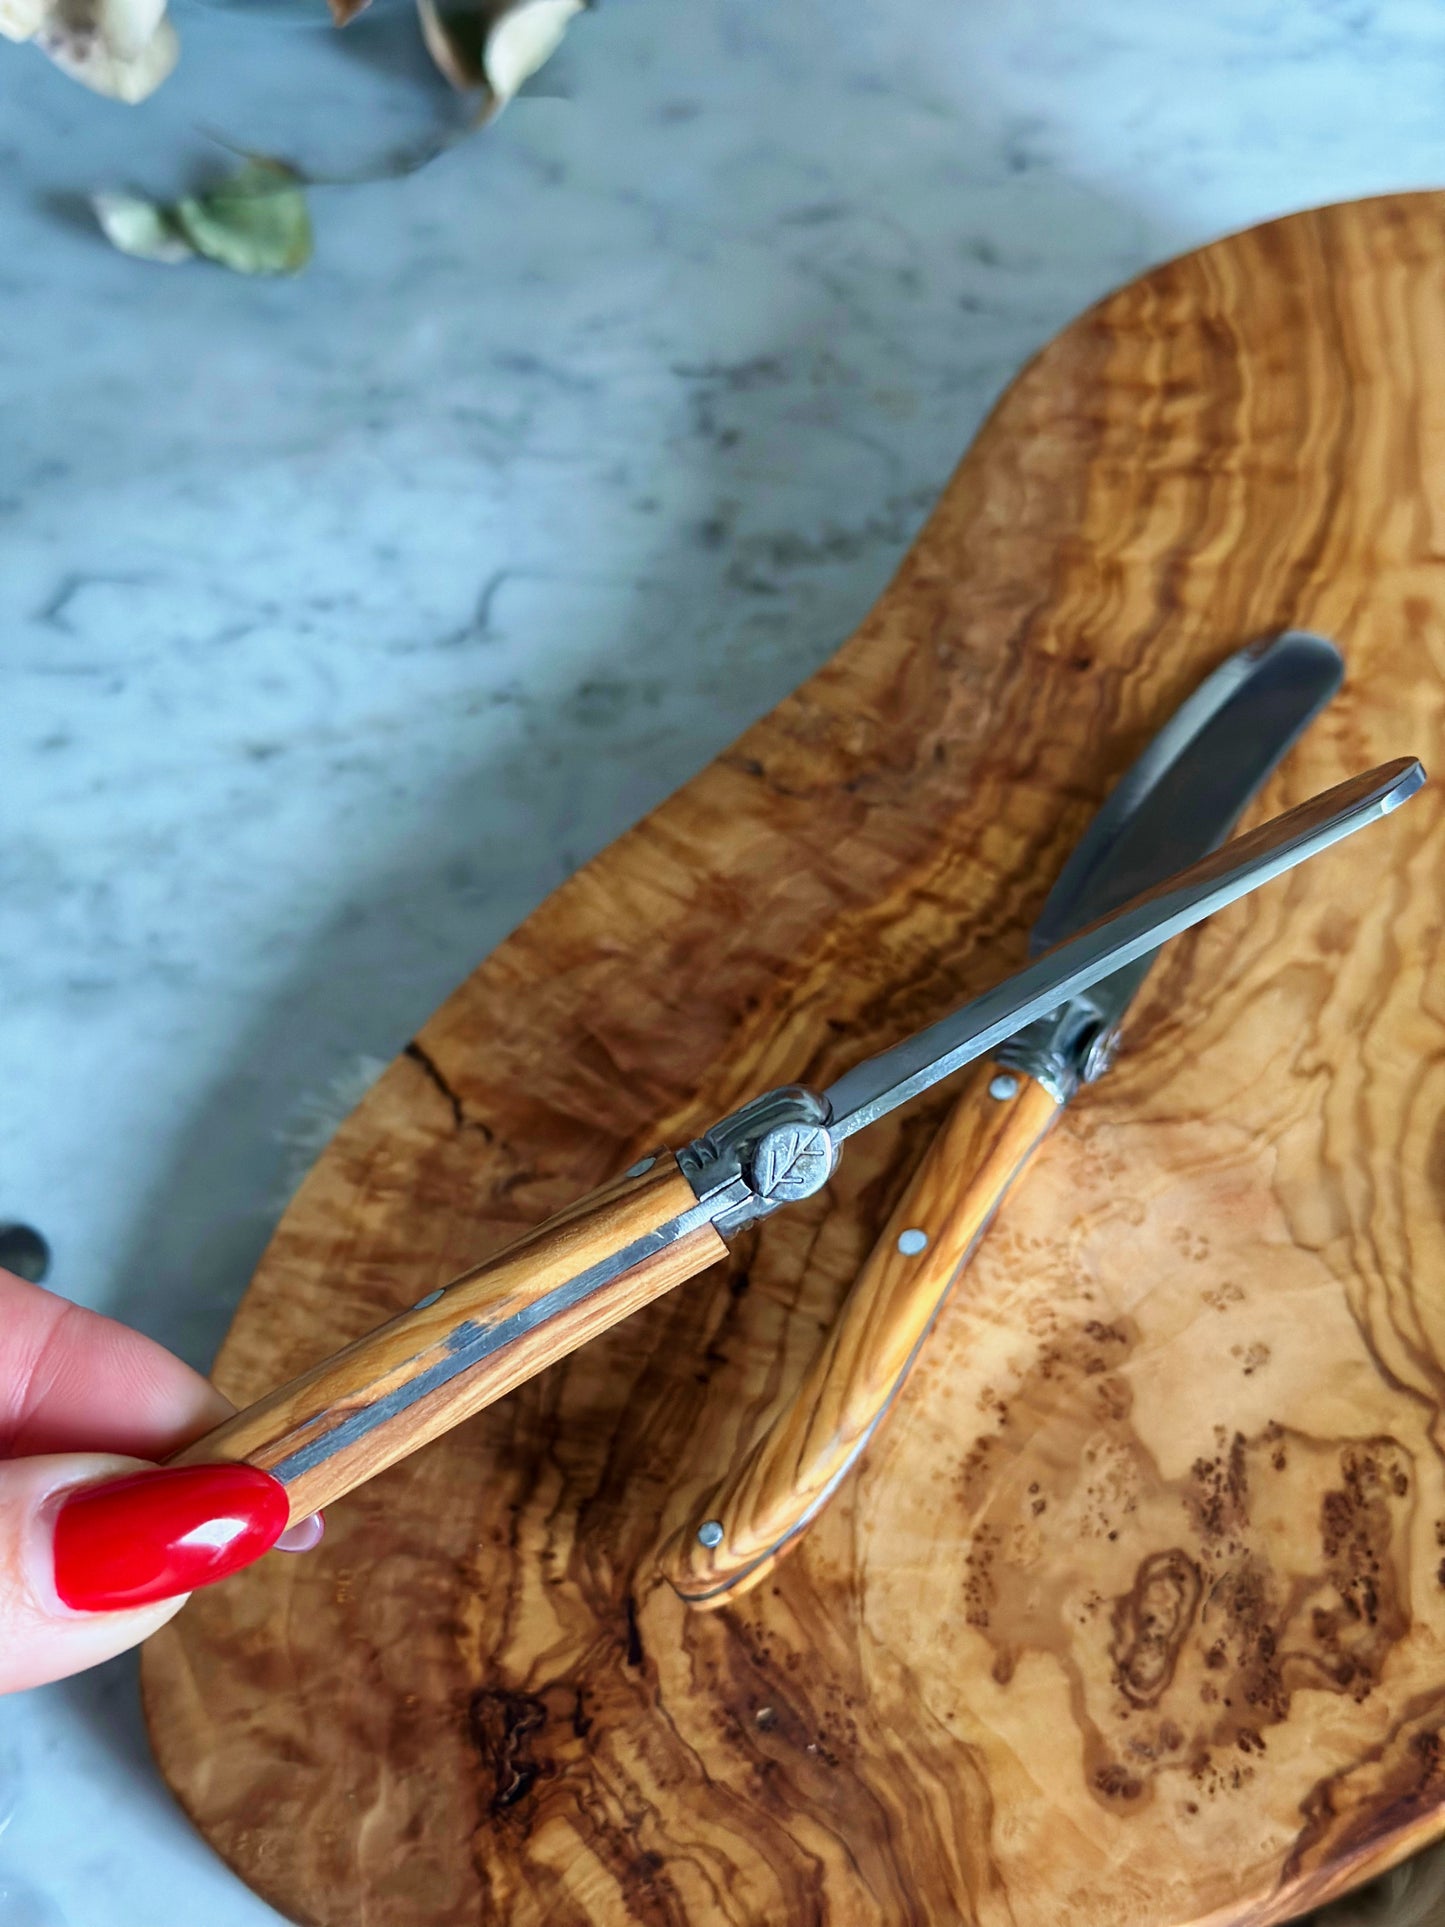 Olive Wood Butter Knife